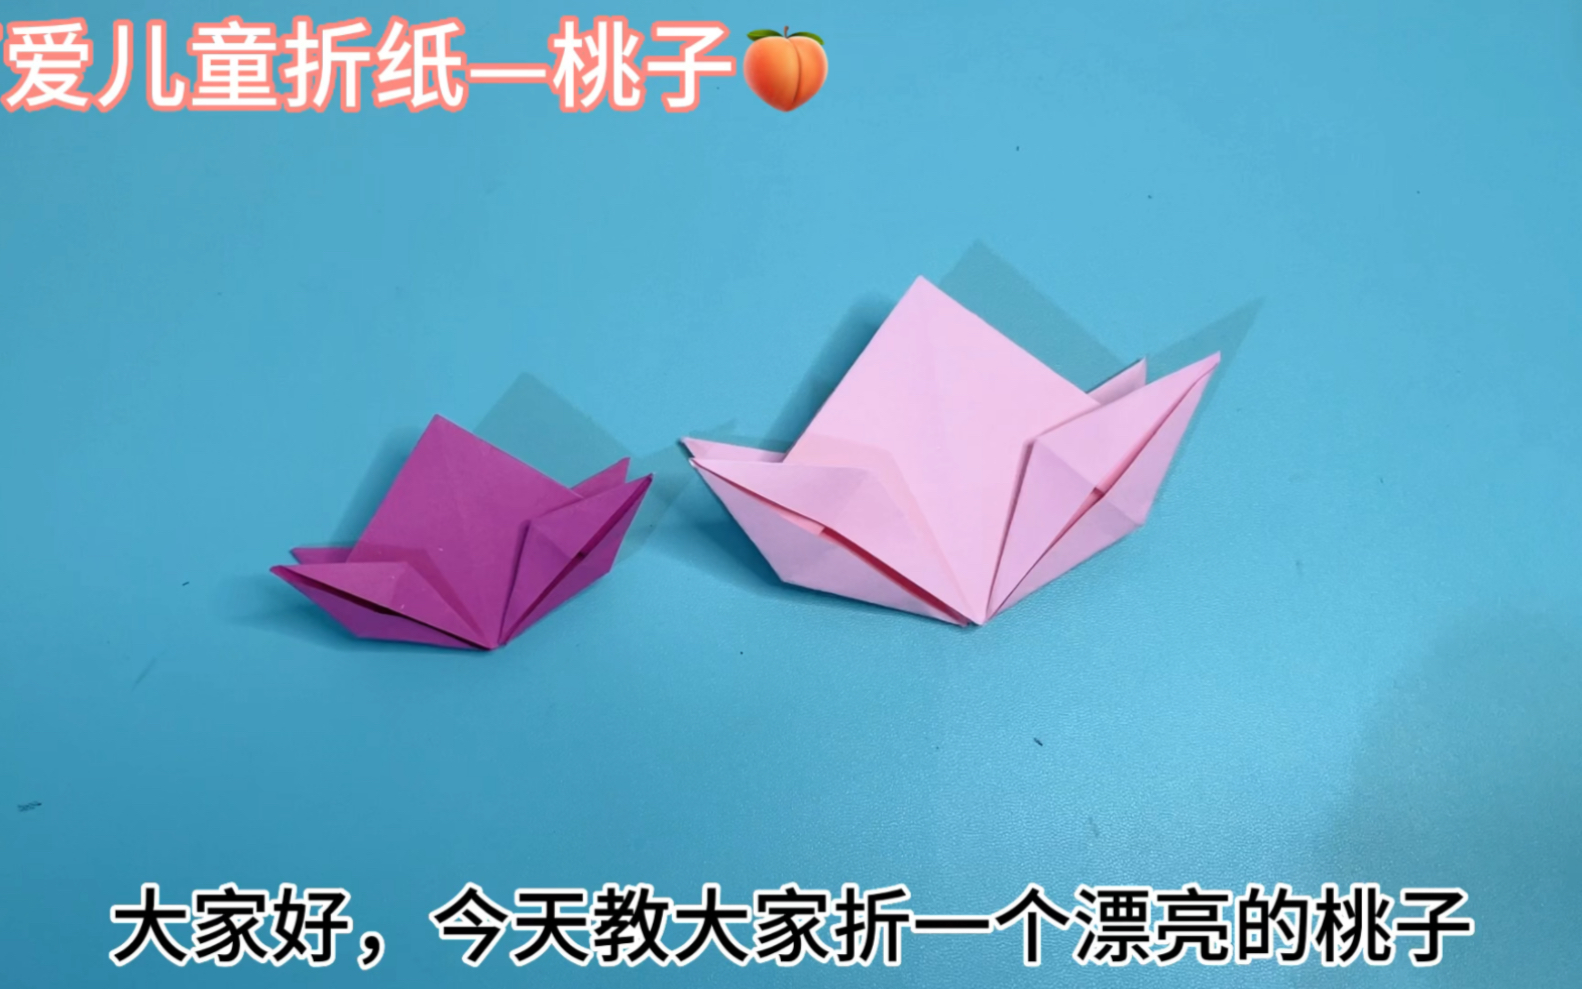 漂亮的桃子折纸详细教程,简单易学,给宝贝折一个桃子吧